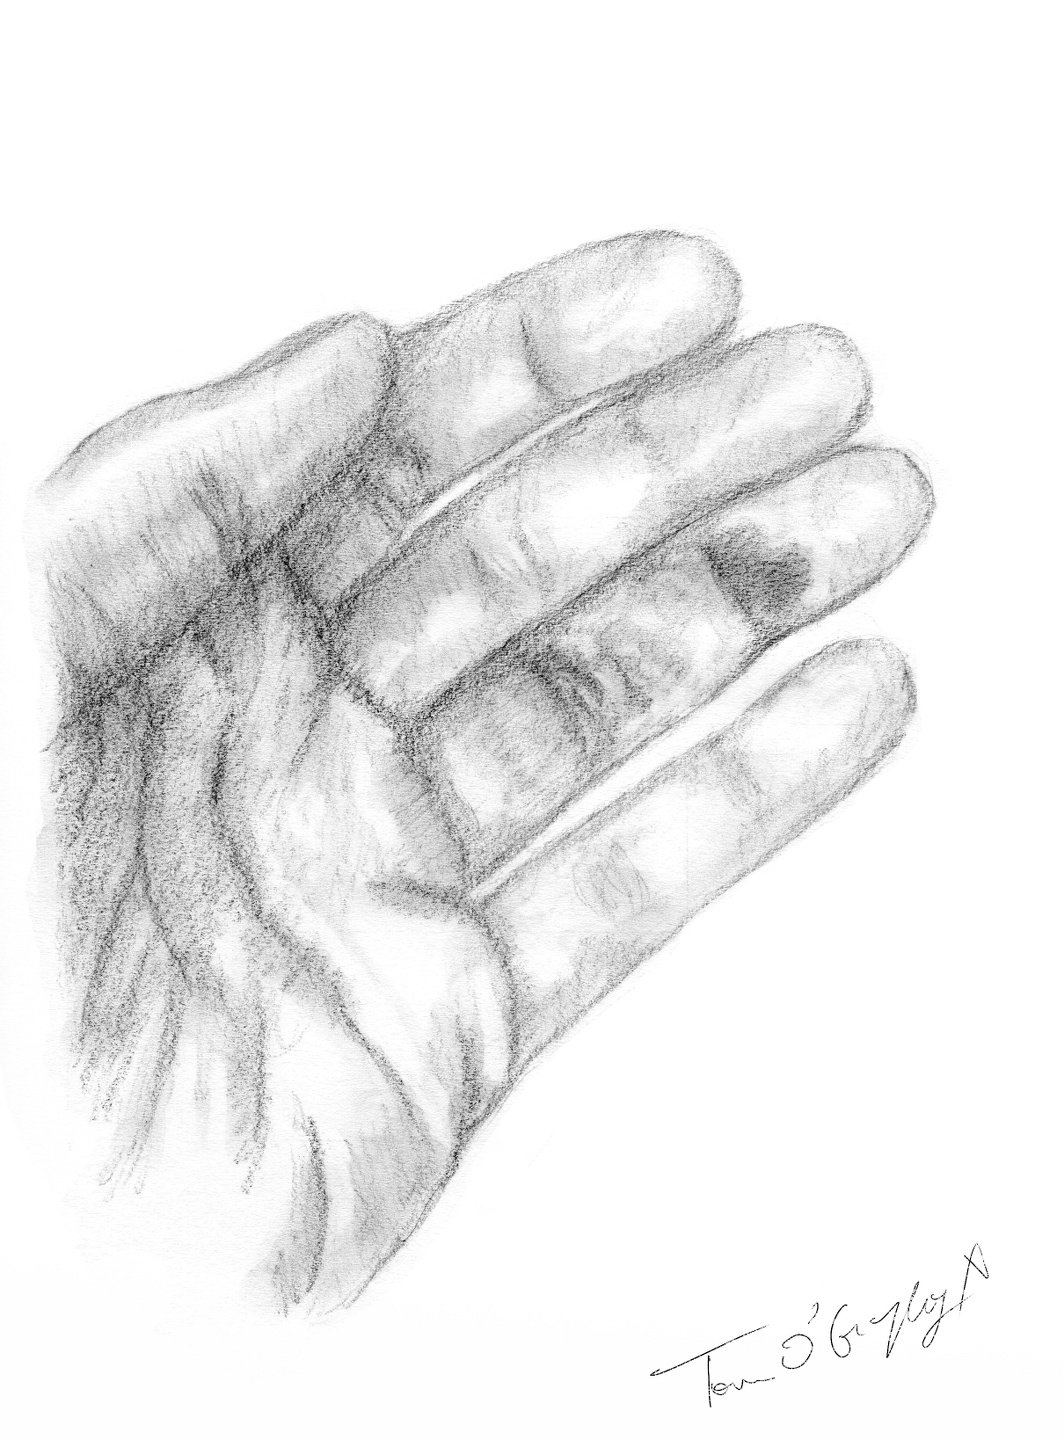 Fracture de la deuxième phalange des doigts | thoracotomie